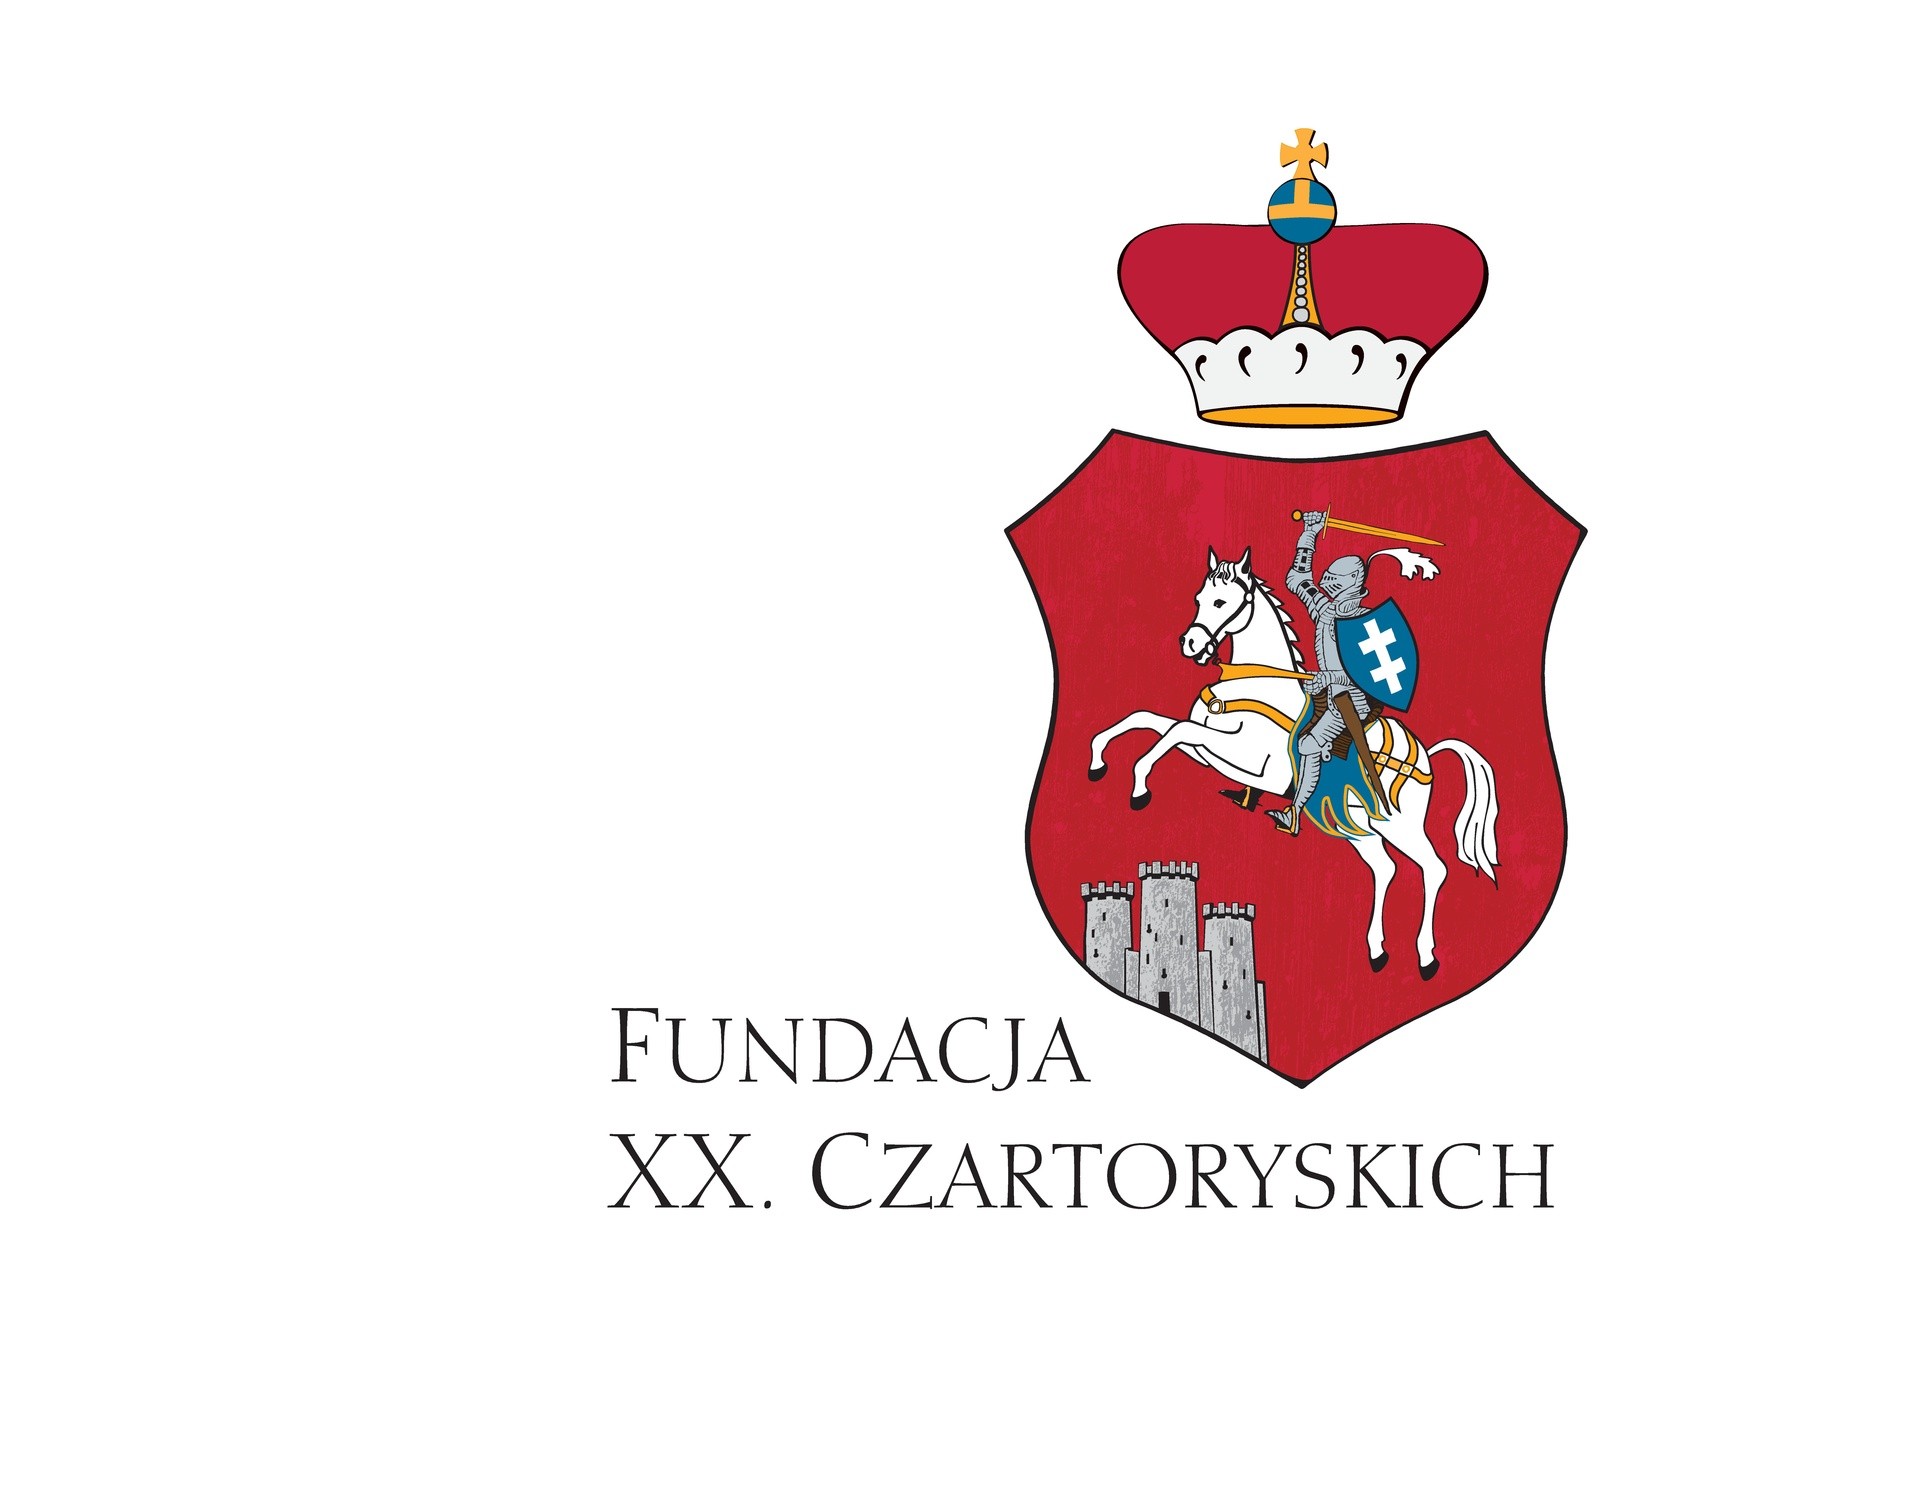 Fundacja Czartoryskich